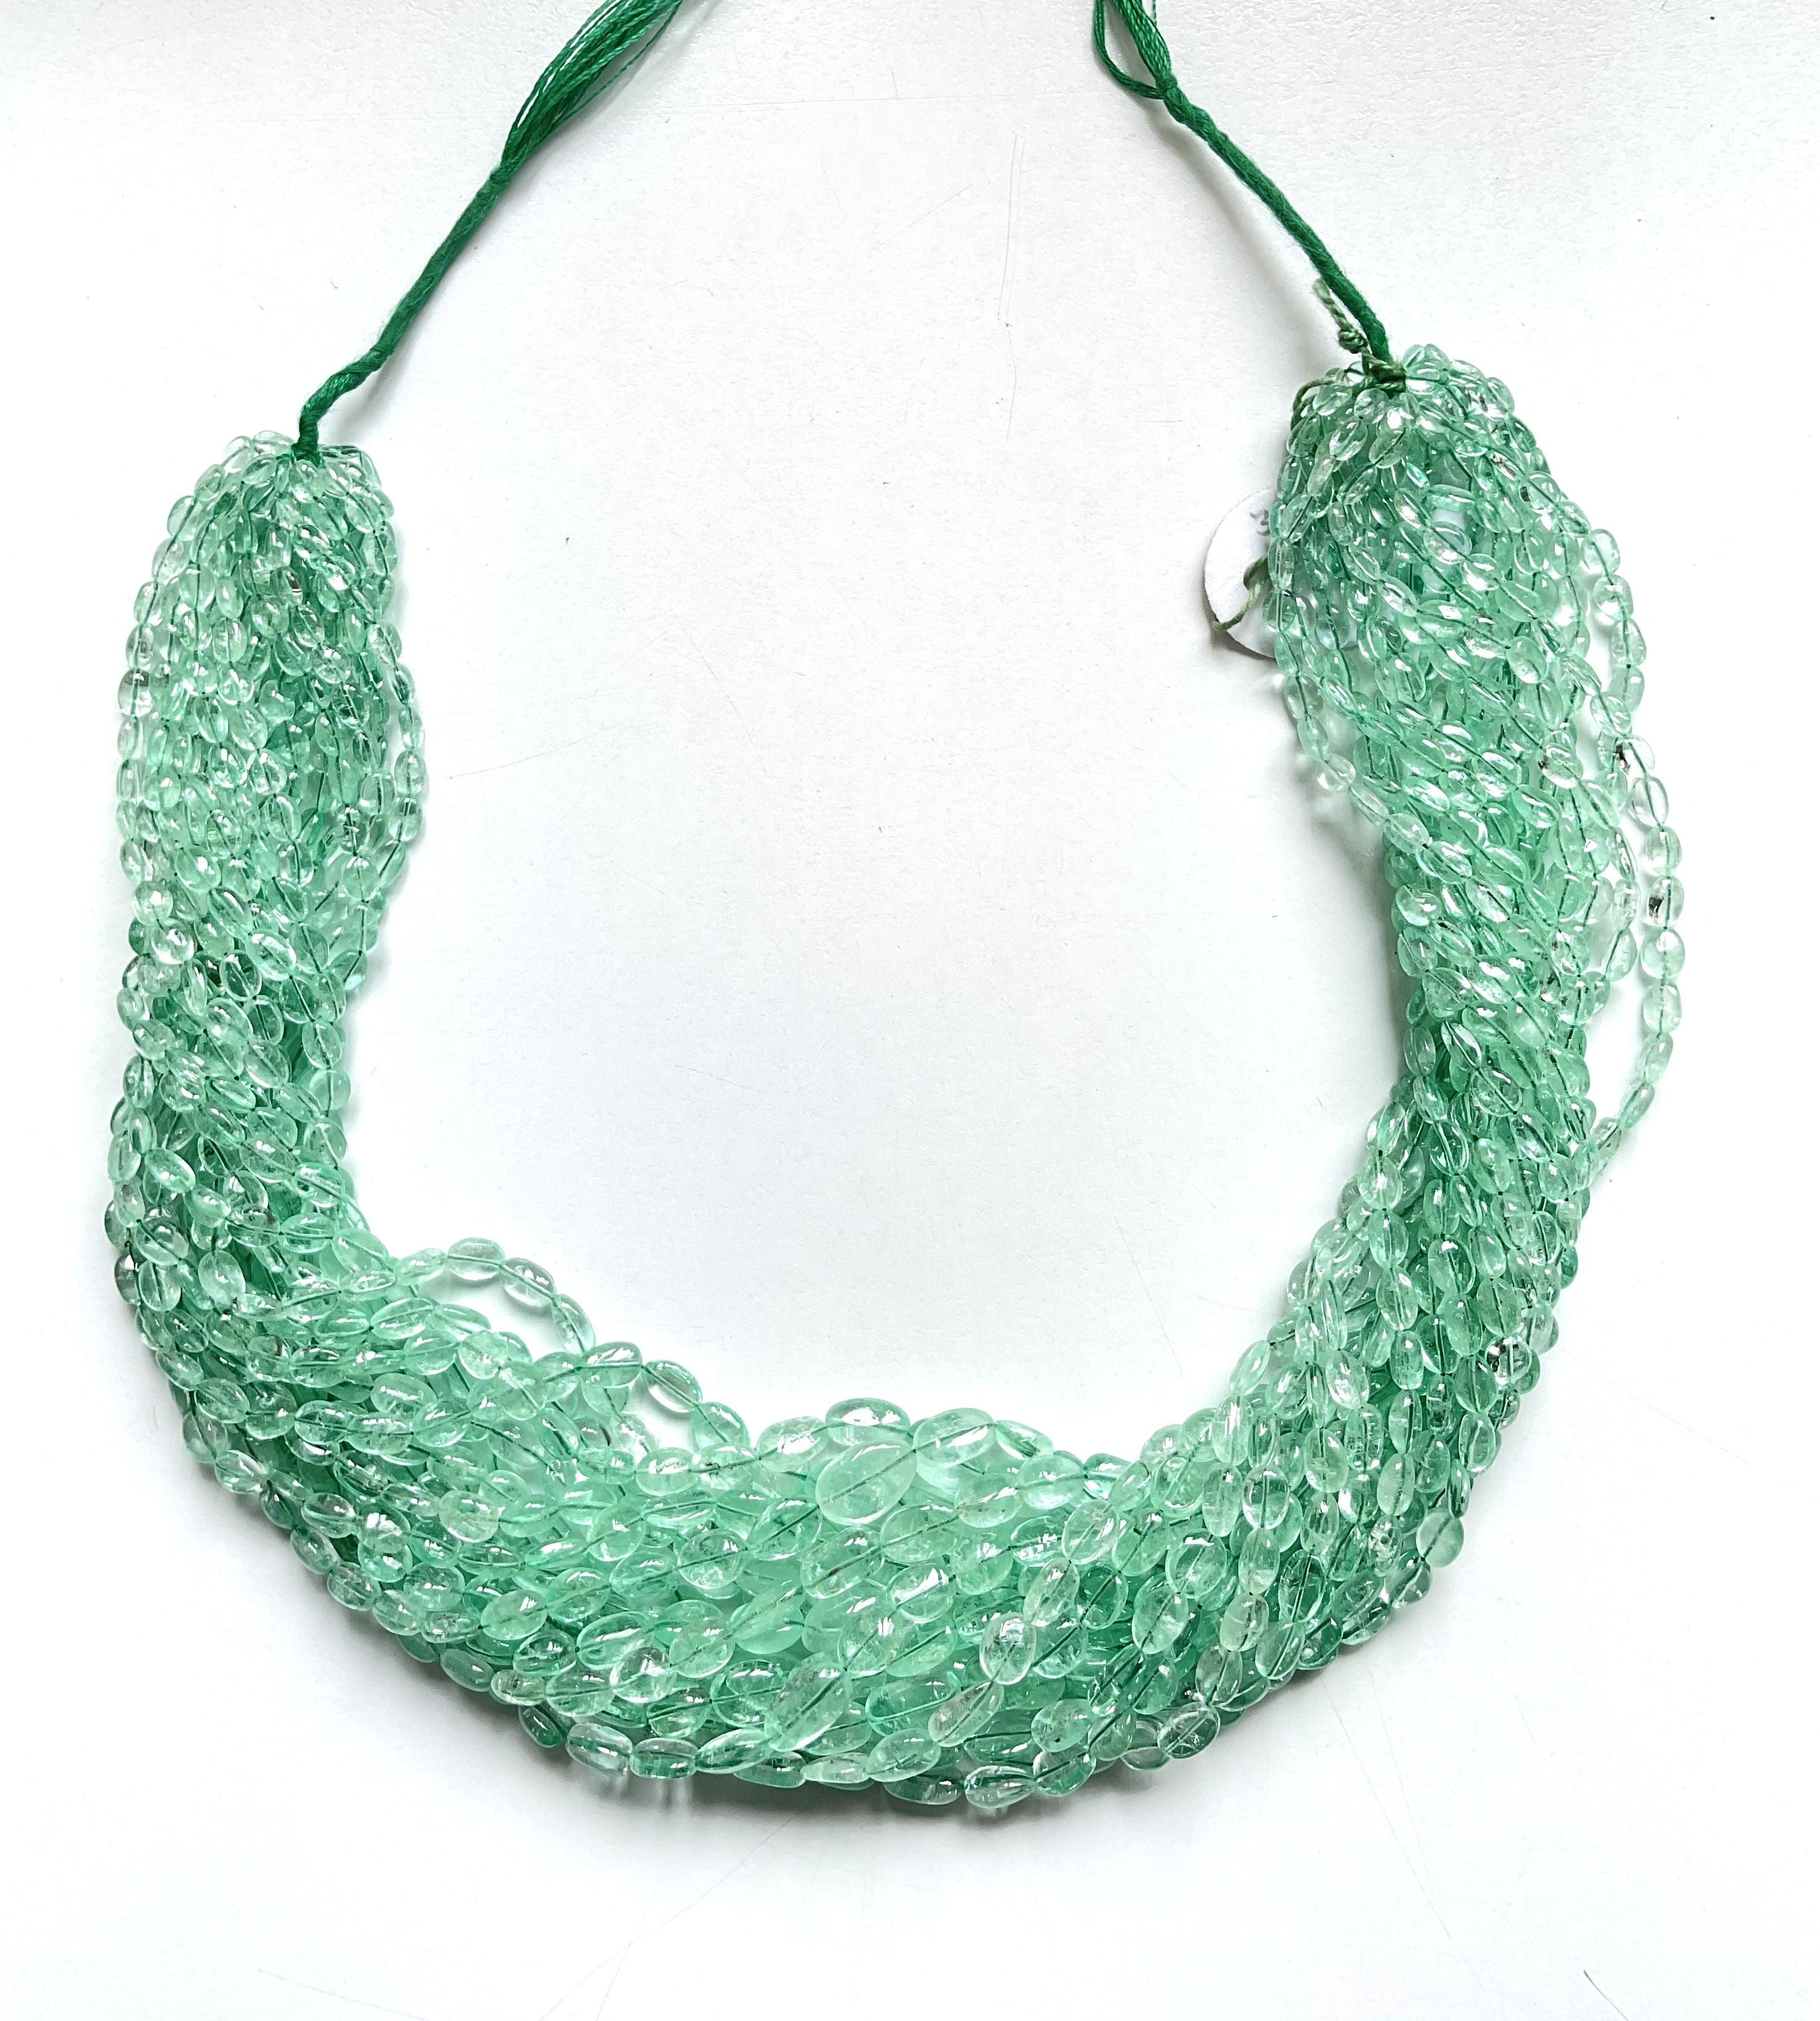 Kolumbianische Smaragd Mani
Gewicht: 788,16 Karat
Größe: 3x4 bis 9x15 MM
Anzahl: 17 Zeile
Die Form: Tumble